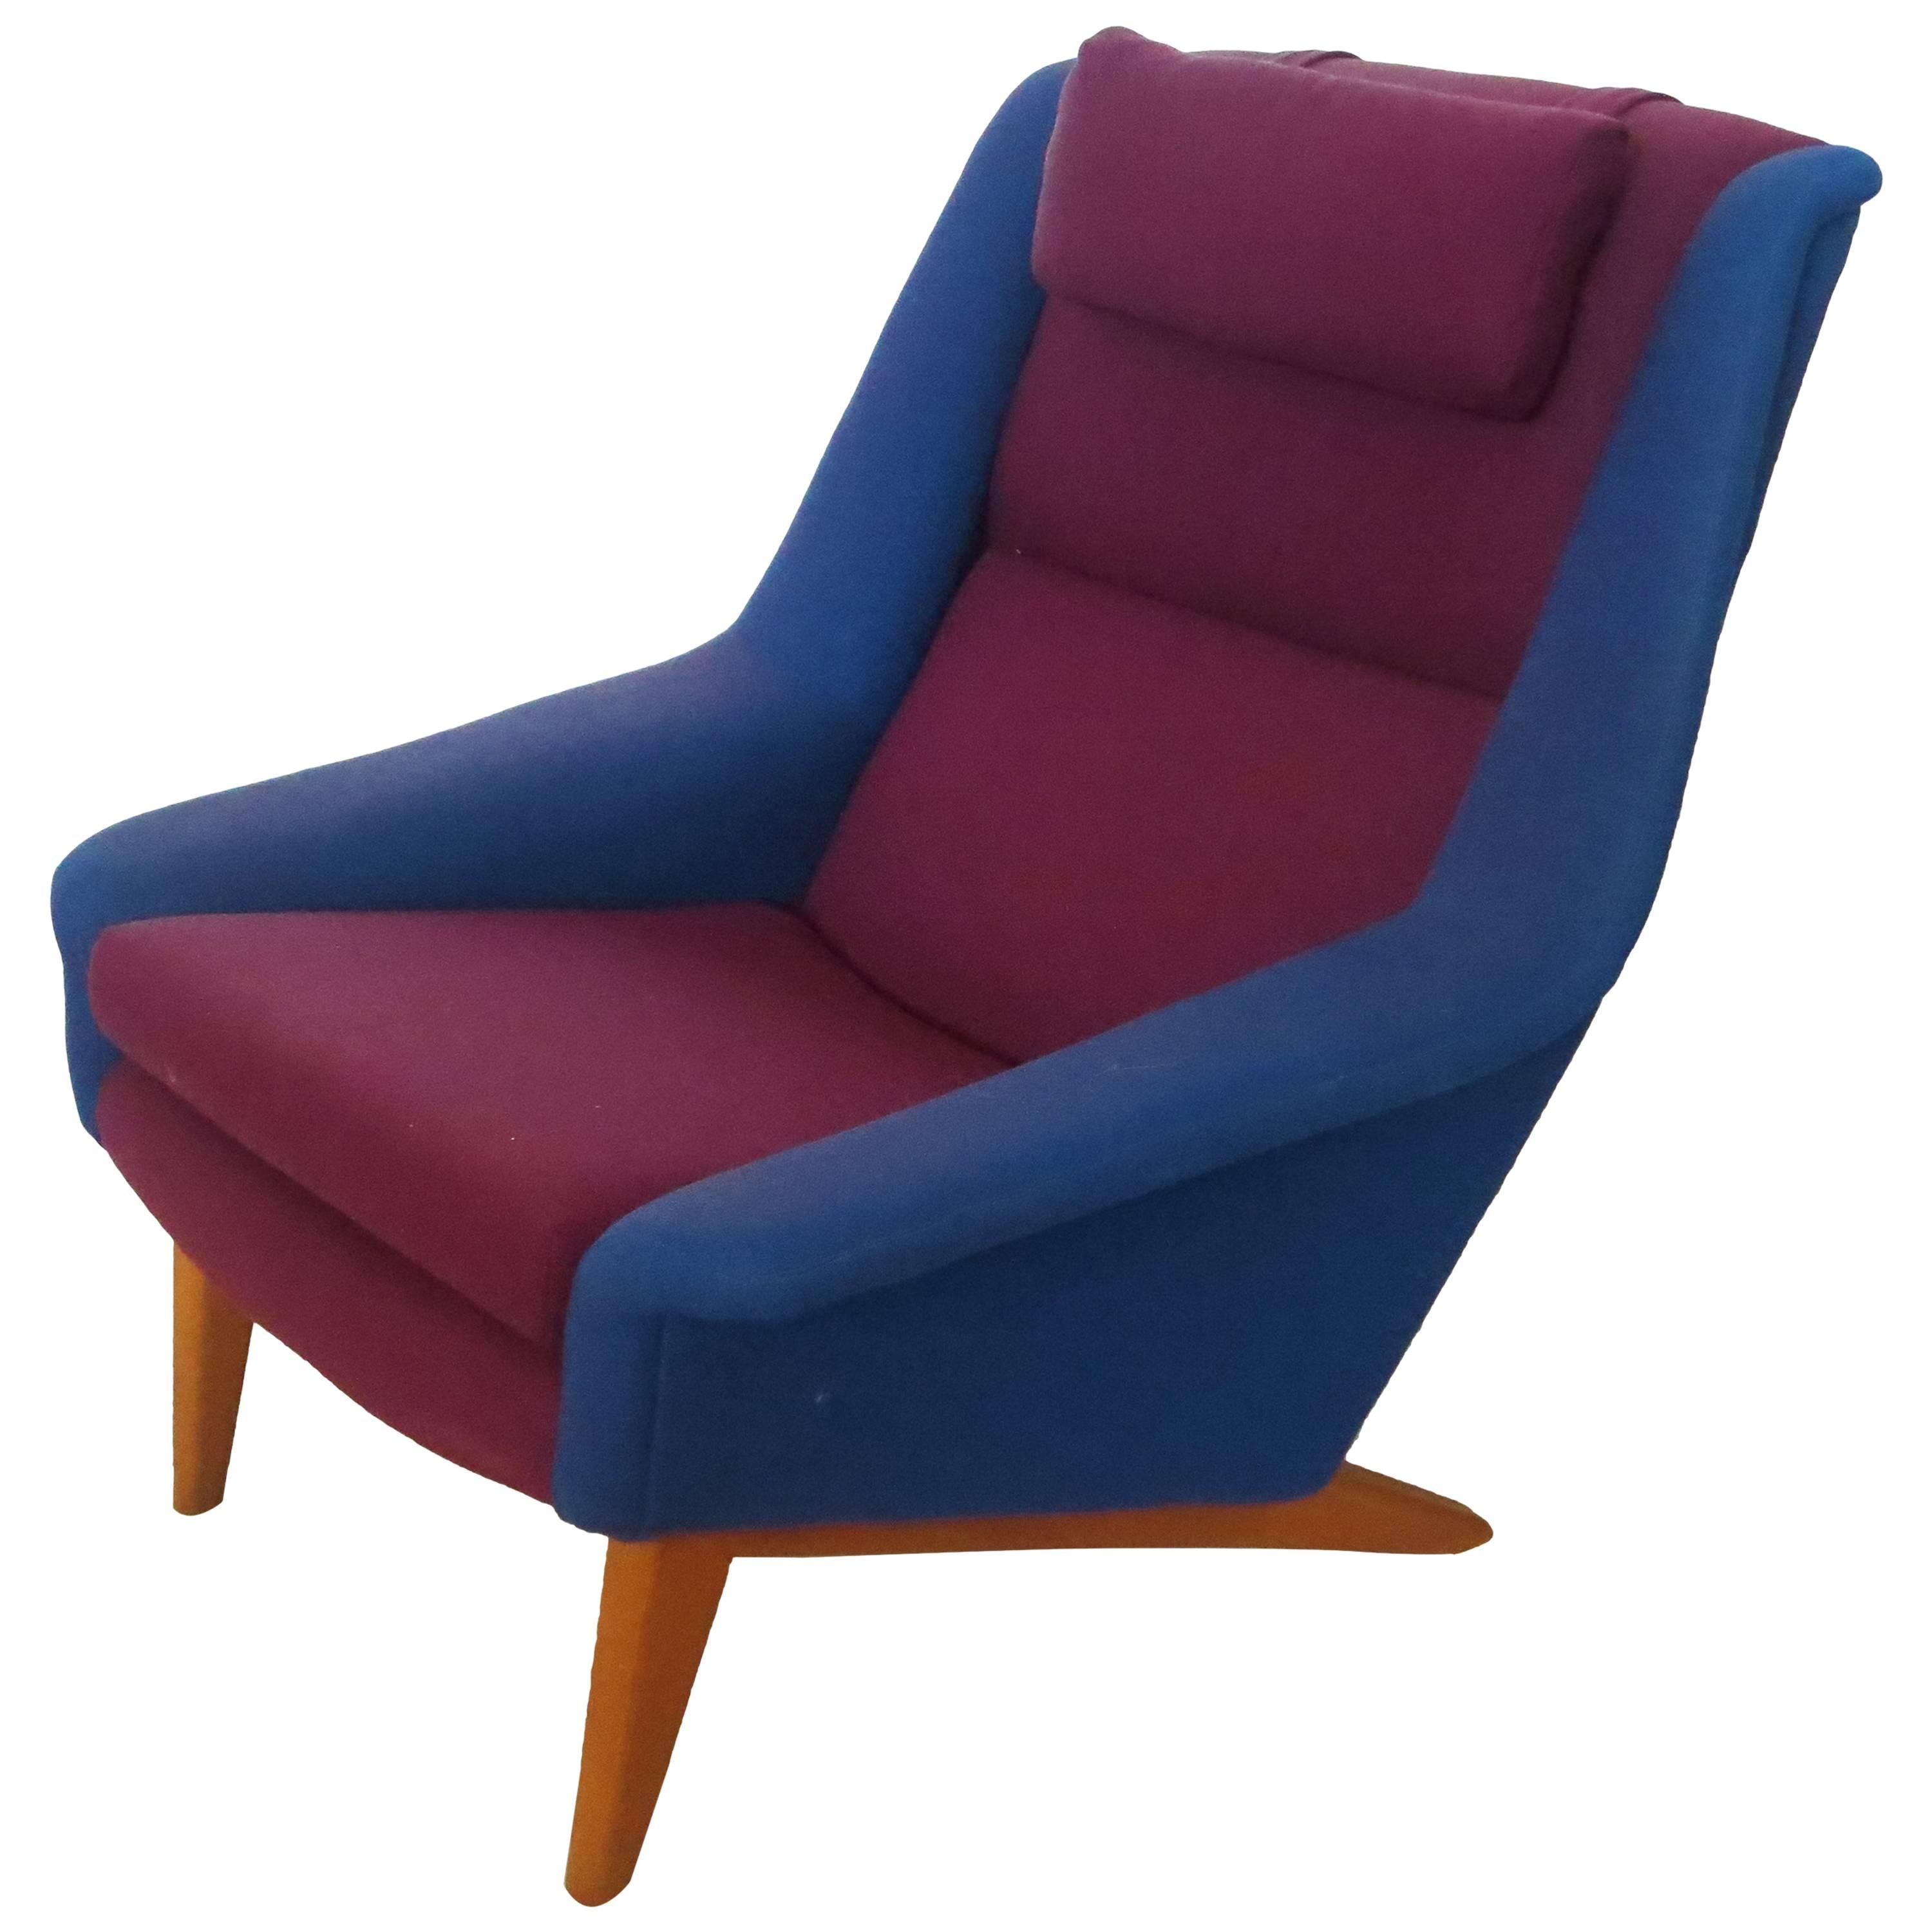 Rare Original Upholstery Lounge Chair by Folke Ohlsson for Fritz Hansen